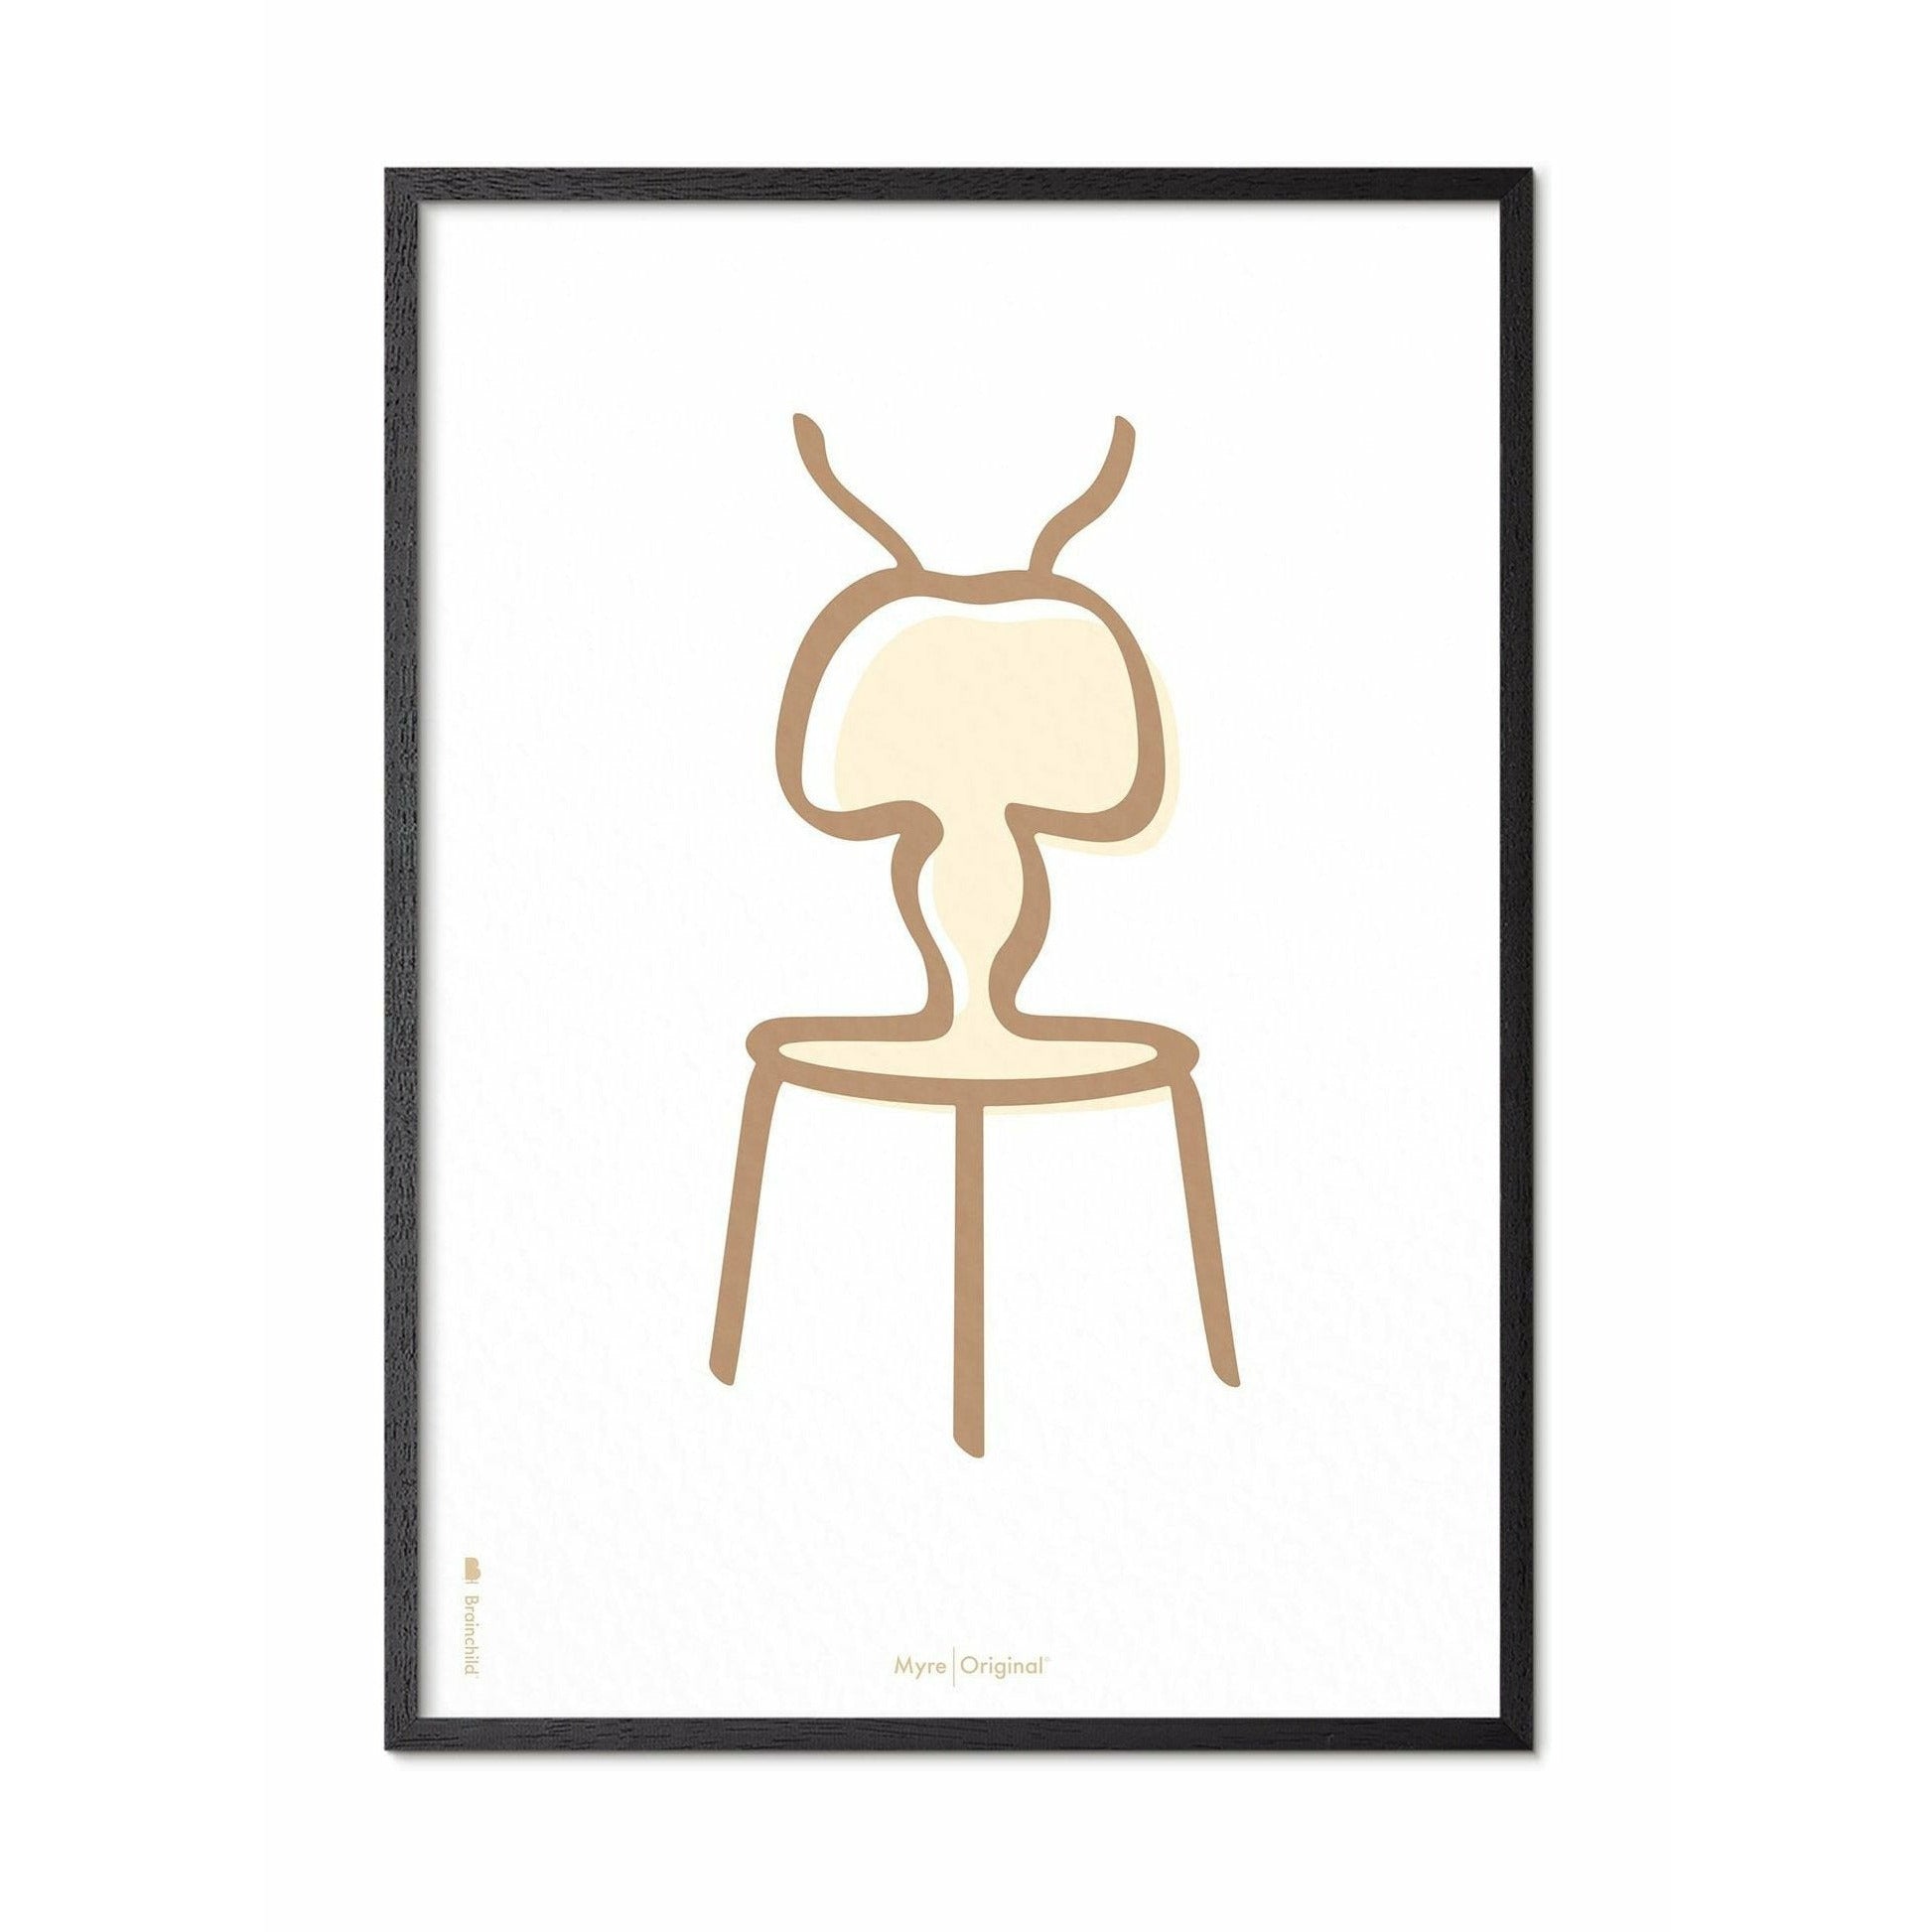 Póster de línea de hormigas de creación, marco en madera lacada negra 50x70 cm, fondo blanco